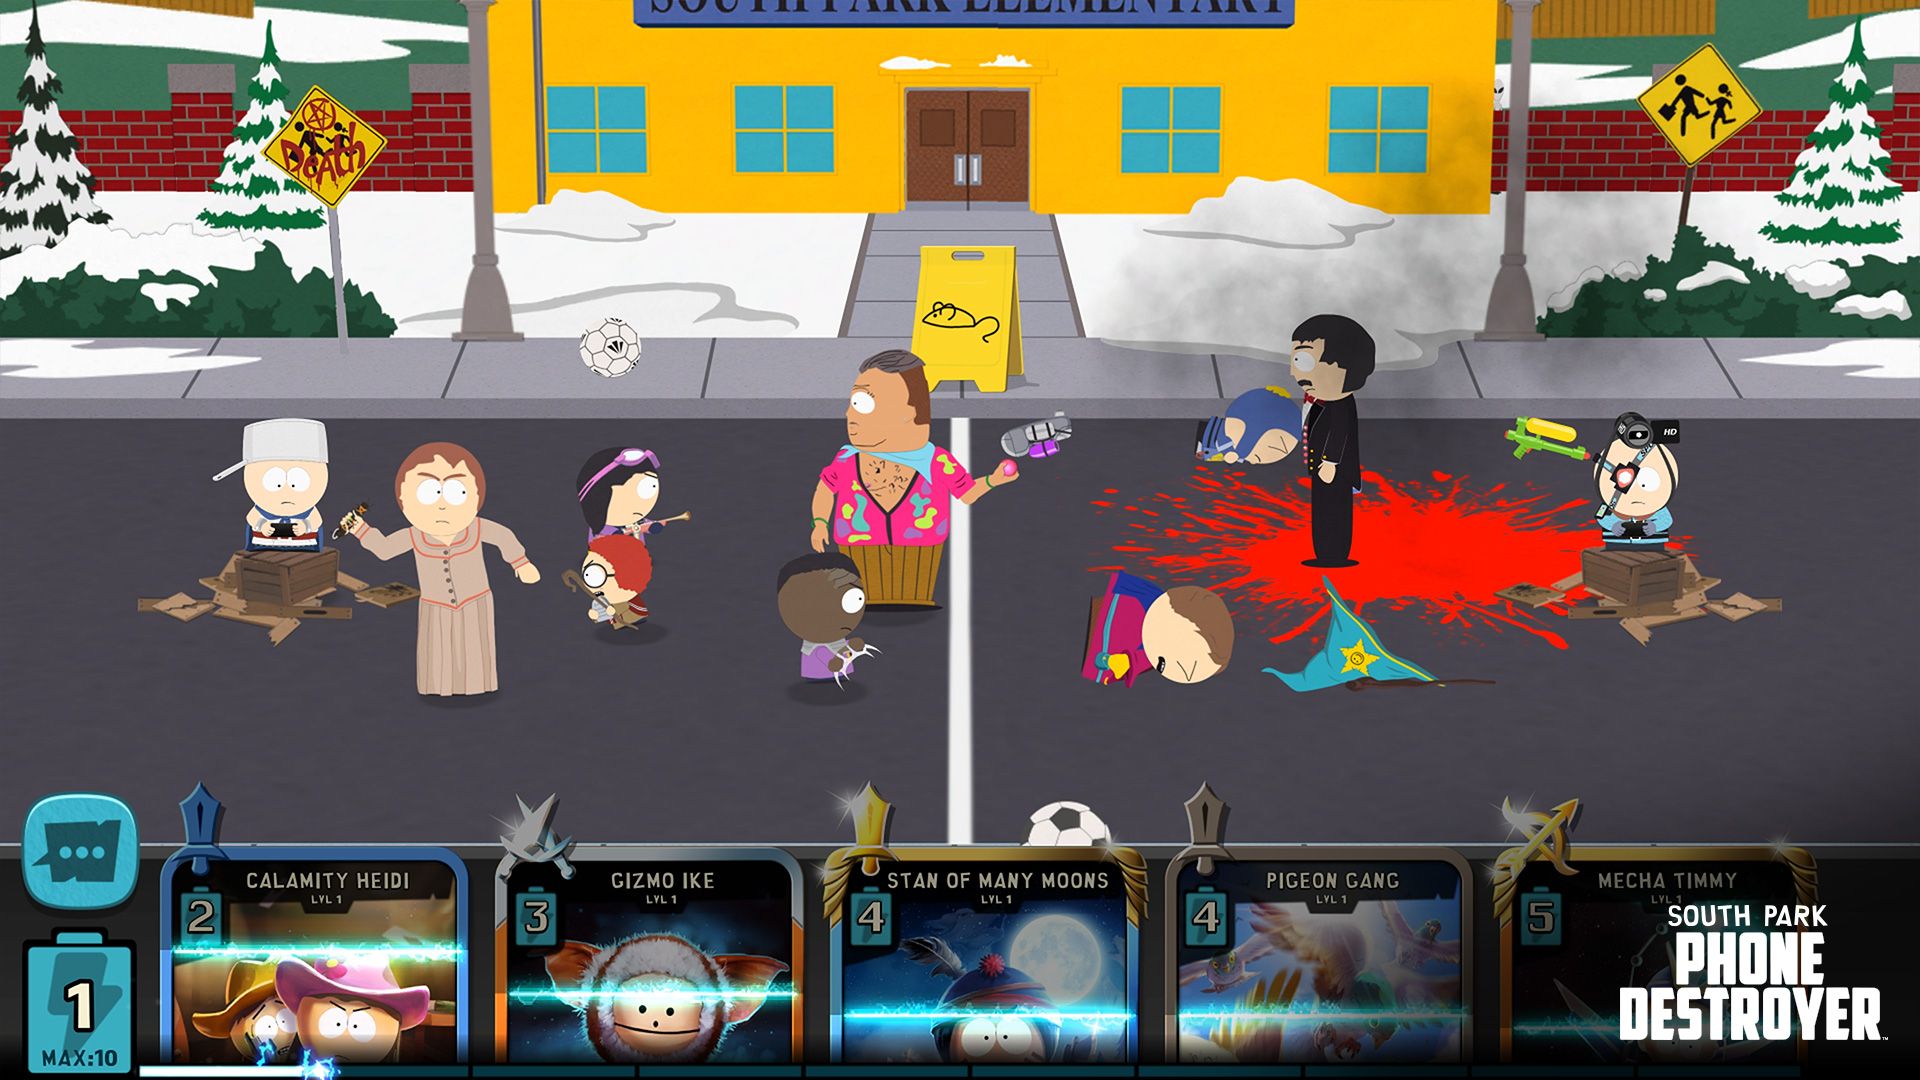 South Park Phone Destroyer est disponible sur iOS et Android, place à